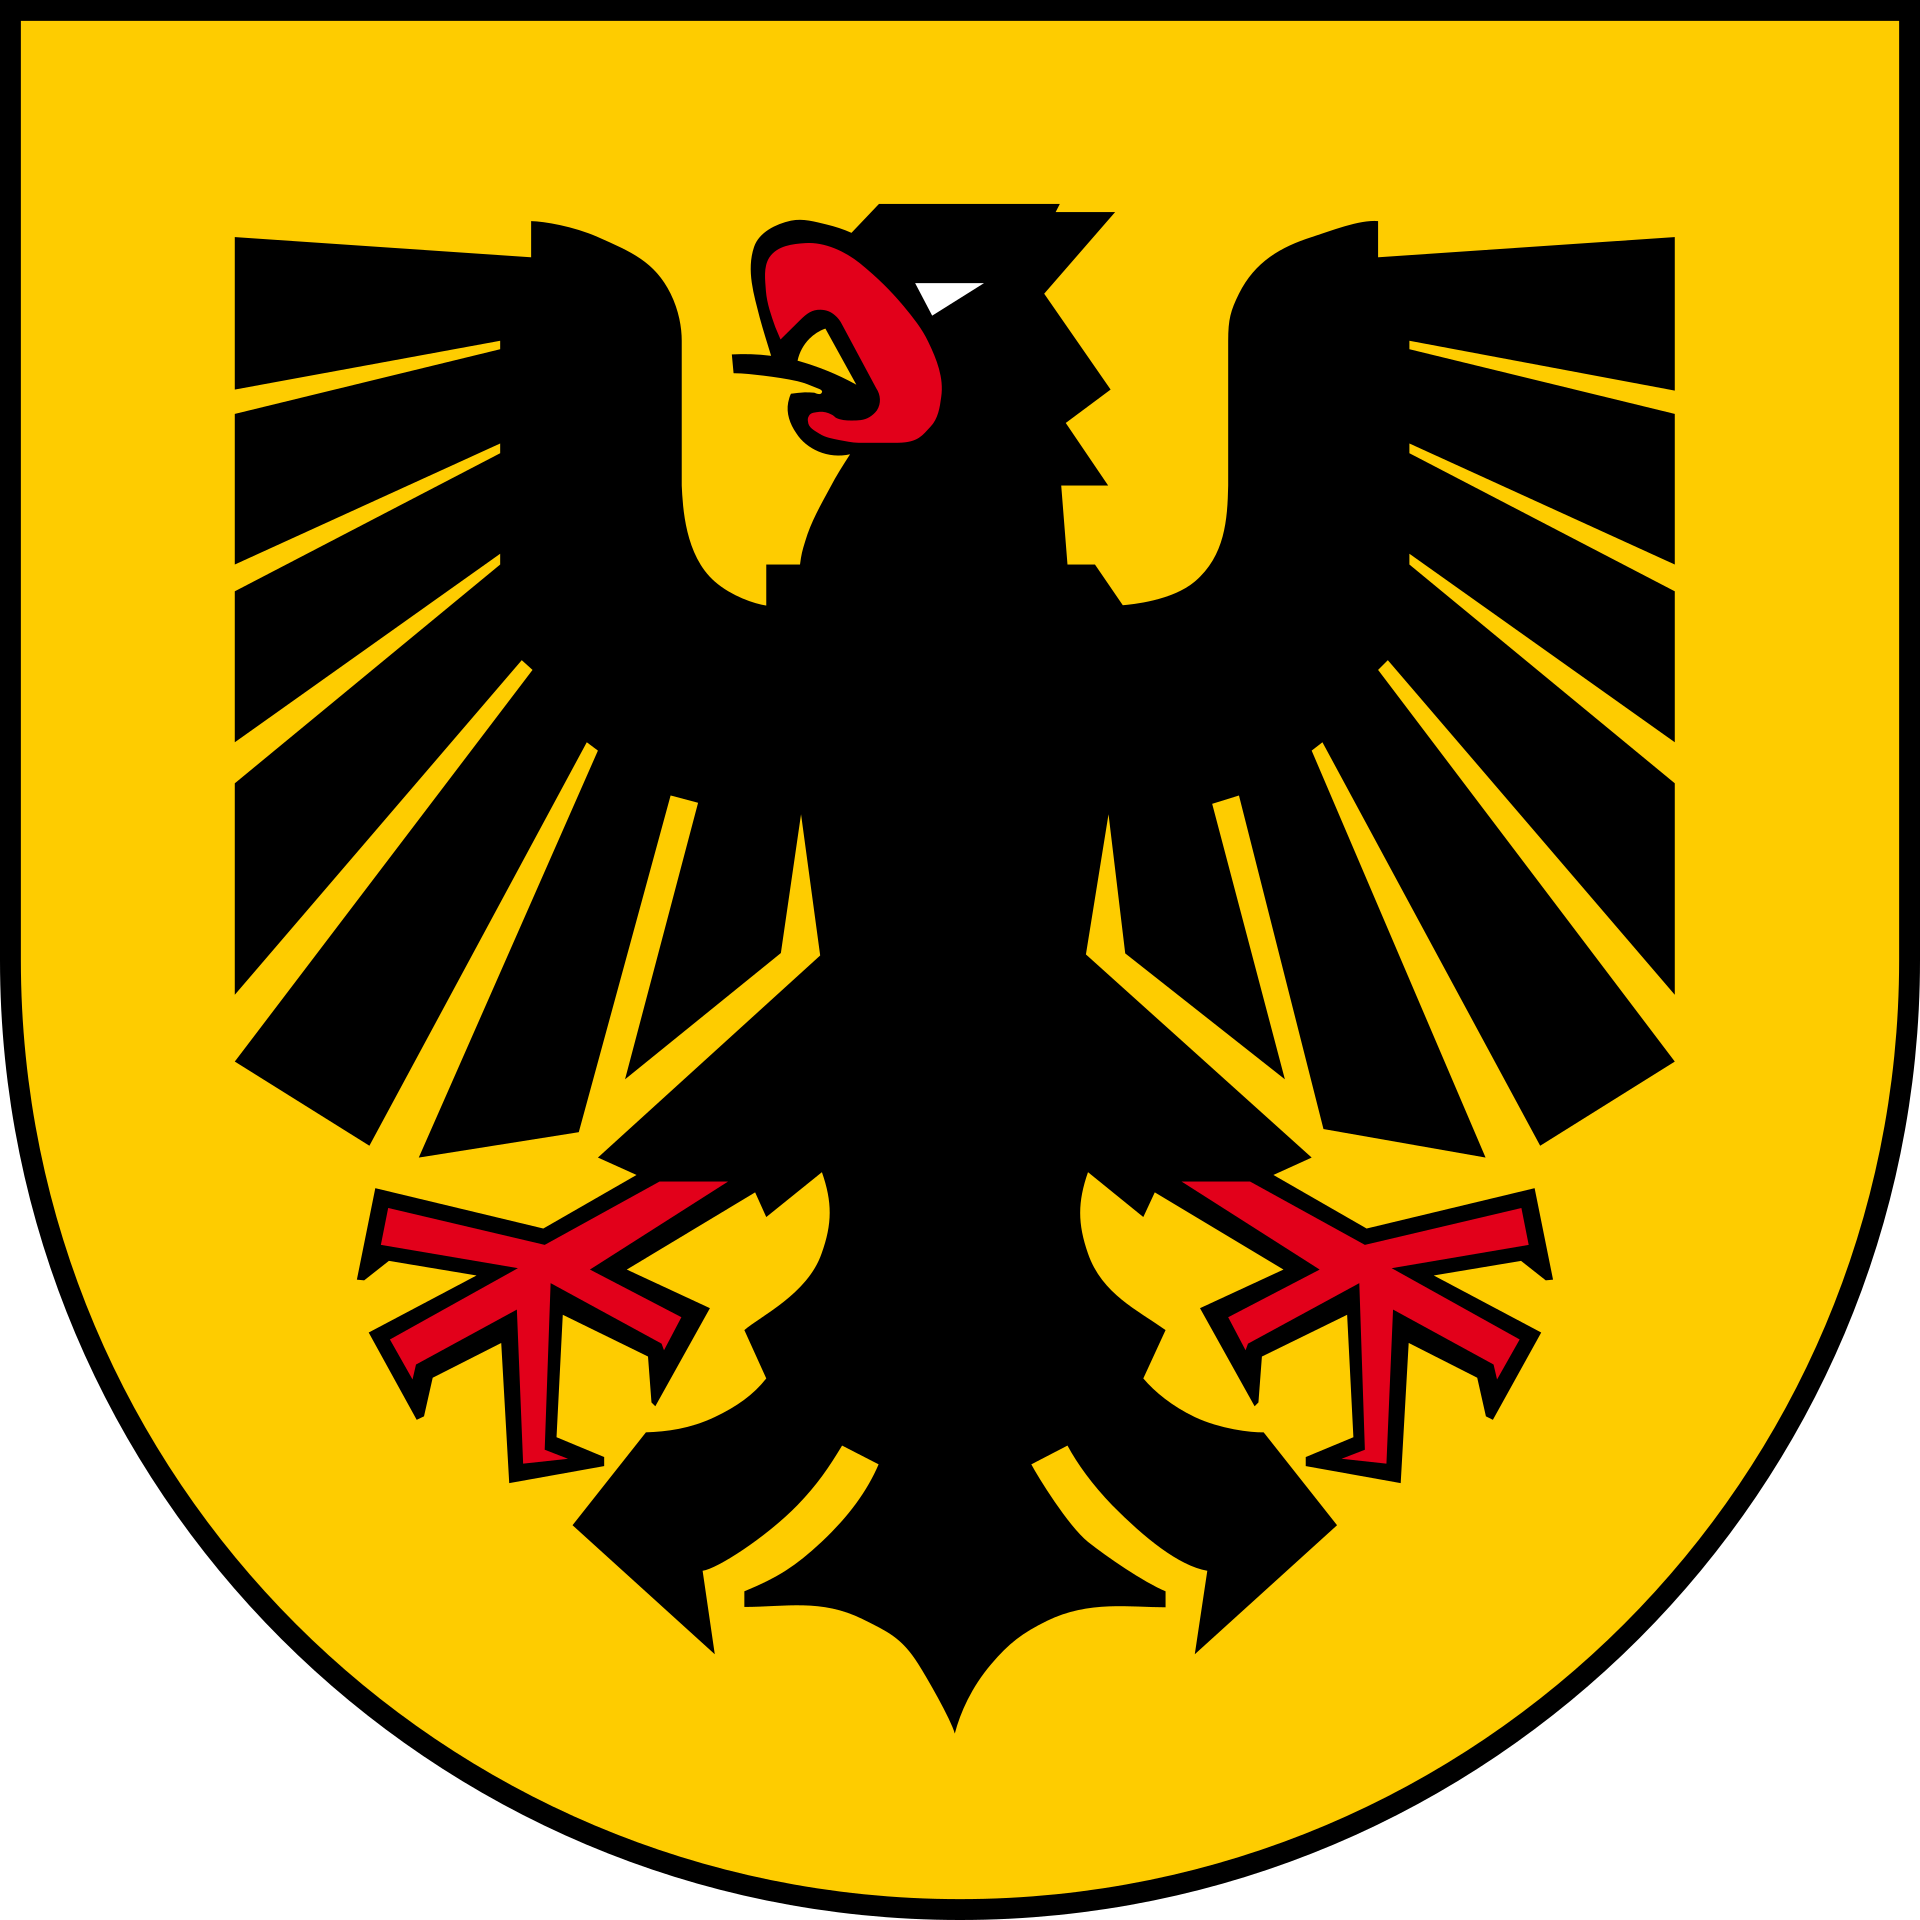 Nordrhein-Westfalen,Abkürzung NRW[10]) ist eine parlamentarische Republik und ein teilsouveräner Gliedstaat innerhalb der Bundesrepublik Deutschland.[11] Mit rund 17,9 Millionen Einwohnern ist es das bevölkerungsreichste Land Deutschlands. Die Landeshauptstadt ist Düsseldorf, die einwohnerreichste Stadt ist Köln. Die Bundesstadt Bonn ist heute Zweitregierungssitz der Bundesrepublik Deutschland.